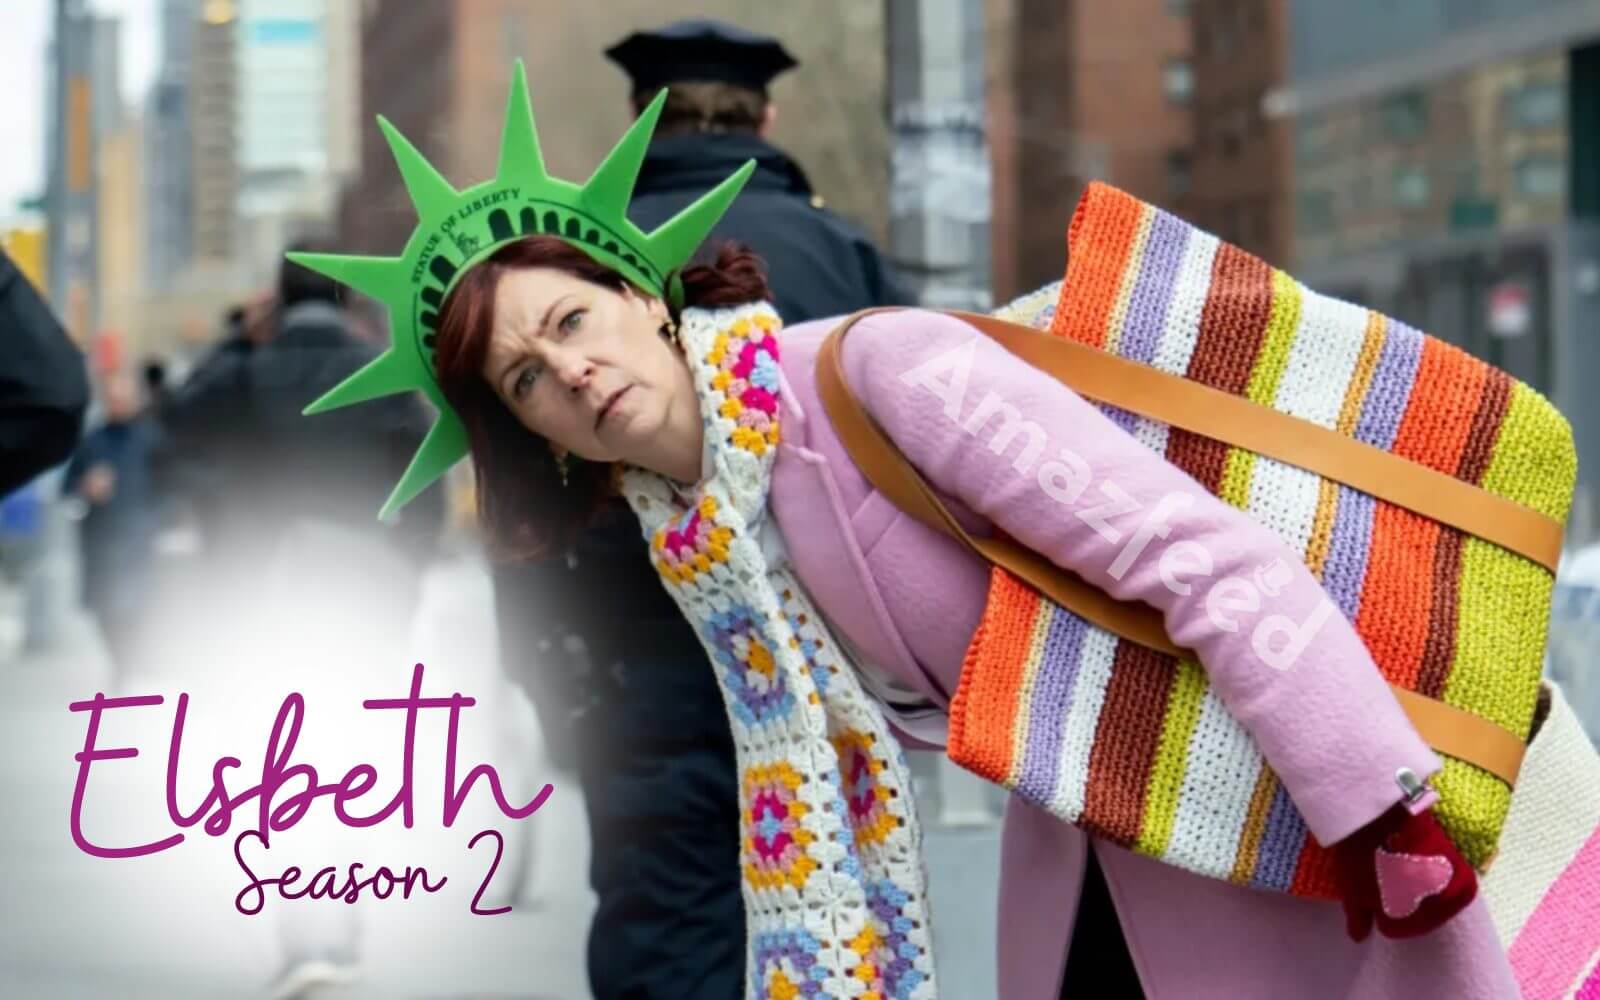 Elsbeth Season 2 release date